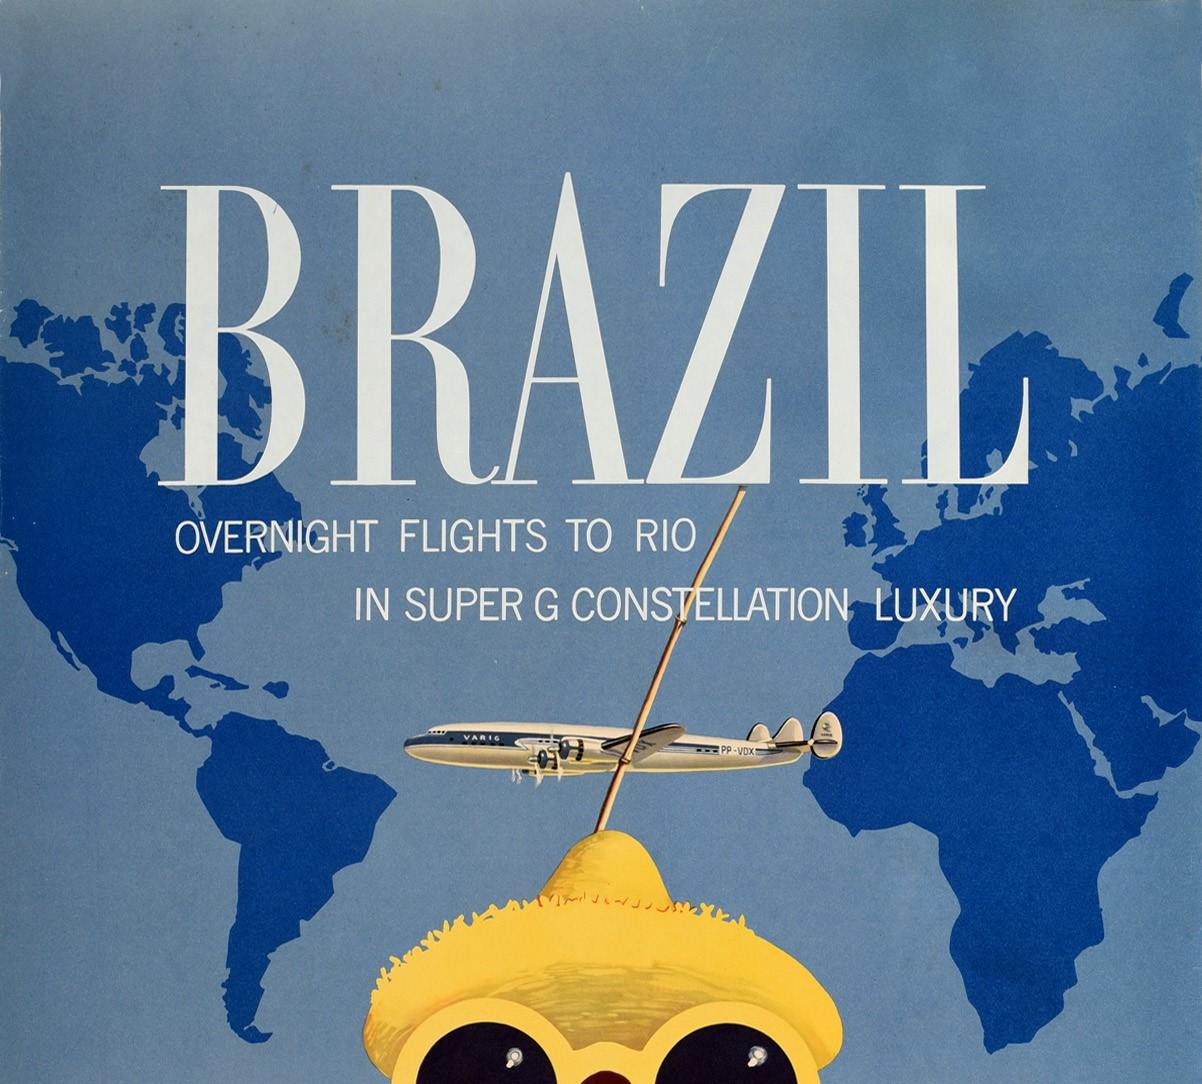 Affiche de voyage vintage originale annonçant des vols de nuit vers Rio en Super G Constellation Luxury par Varig Airlines, avec un dessin amusant représentant un oiseau portant un haut rayé rouge et blanc, un chapeau de paille et des lunettes de